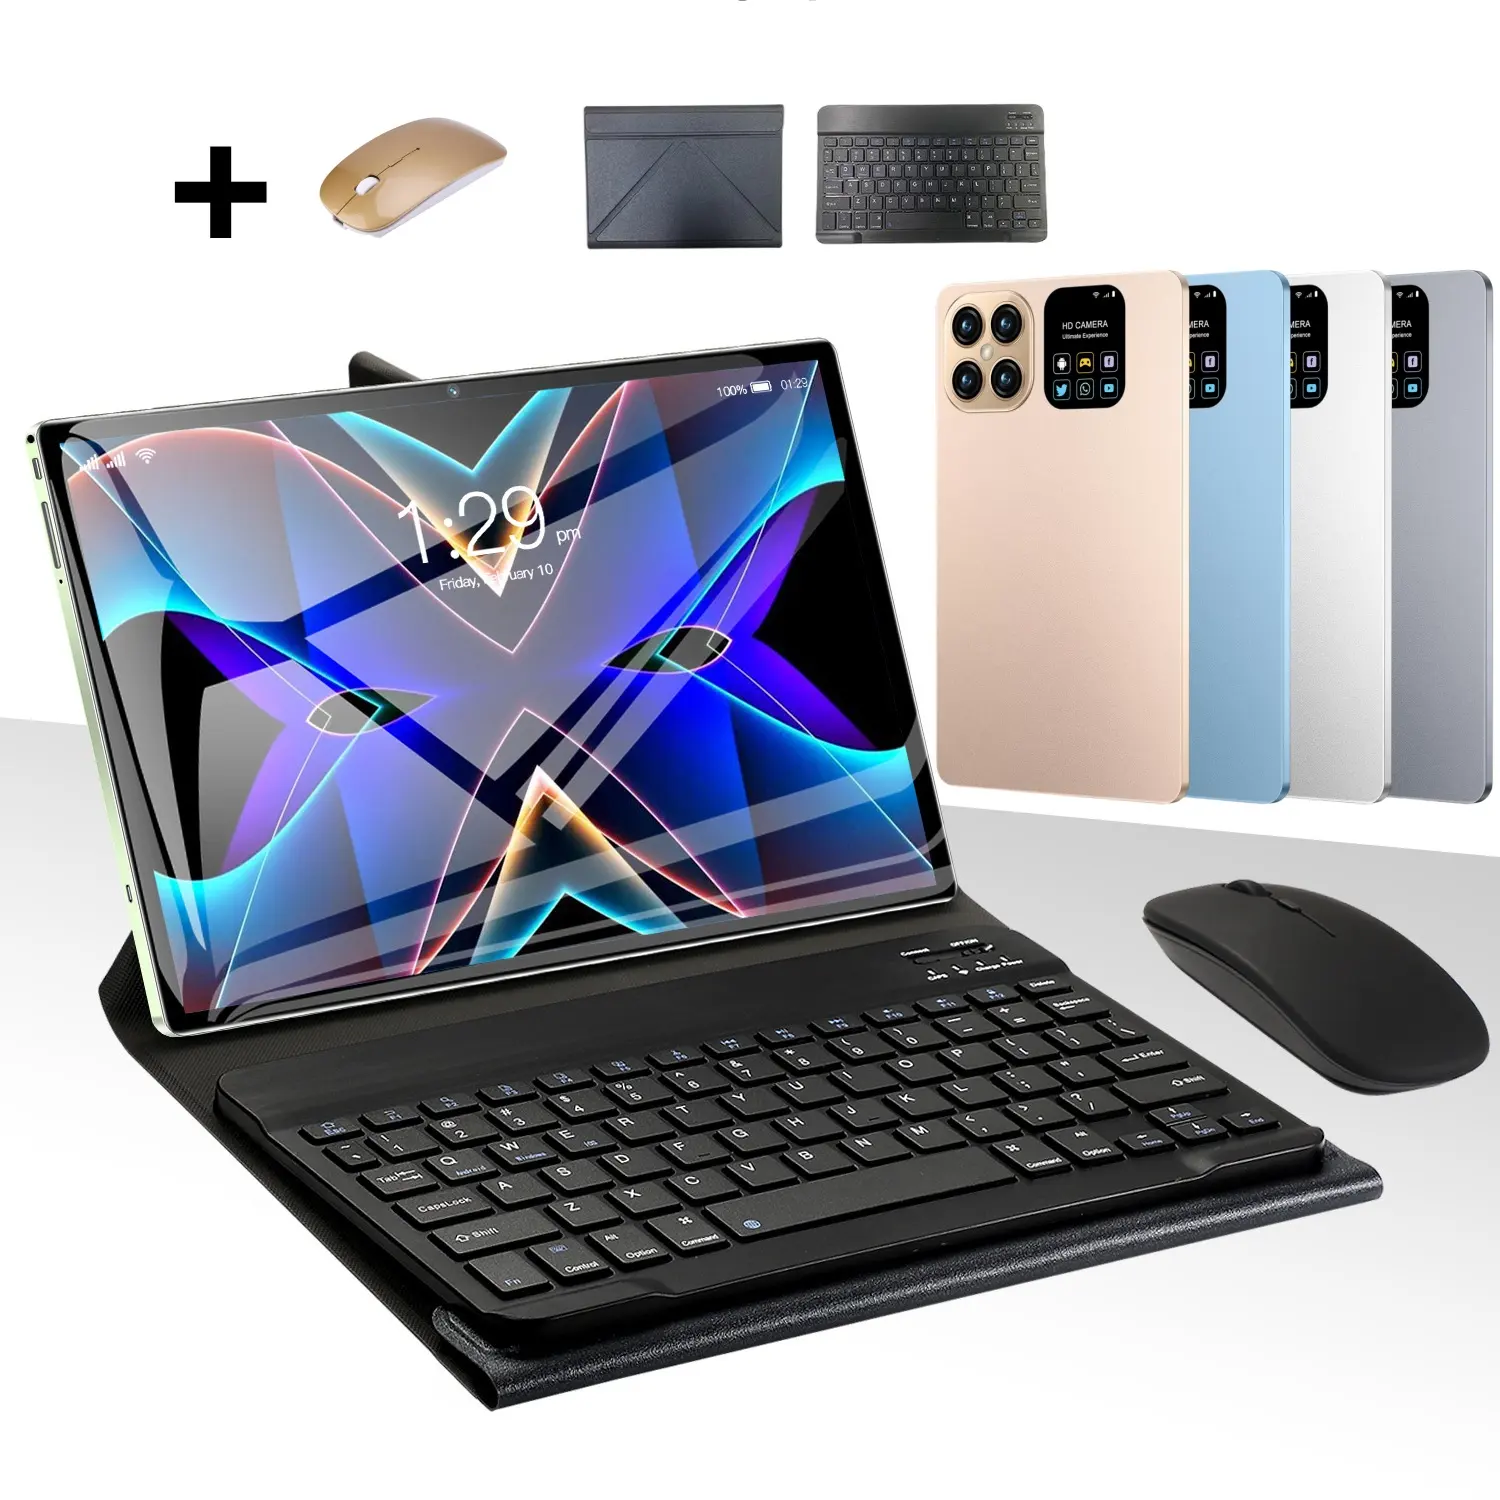 Envío rápido de fábrica nuevo S24 pantalla grande de 8 pulgadas con teclado ratón 512GB memoria enorme cámara HD Android Pad Tablet PC Notebook